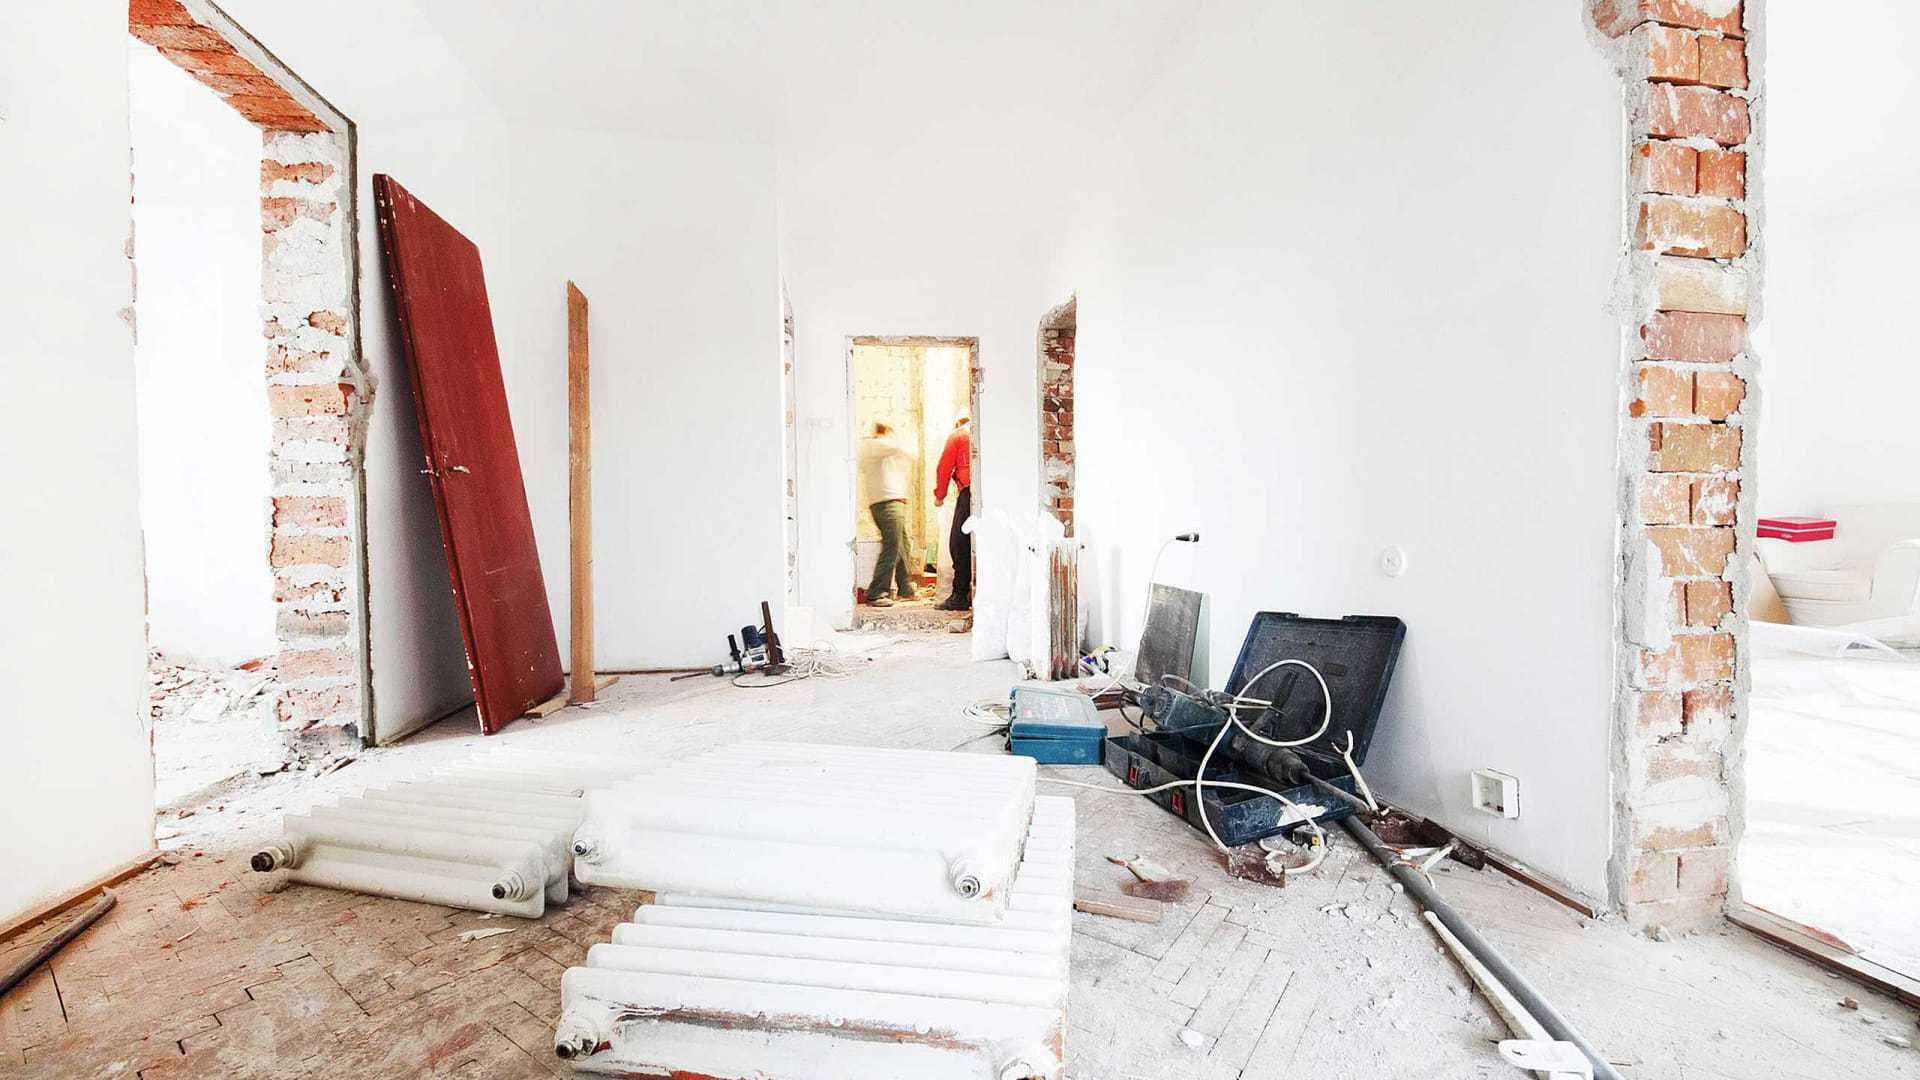 Бизнес по ремонту квартир с нуля в 2021 году. как зарабатывать на ремонтах квартир пассивно от 100 тыс. рублей